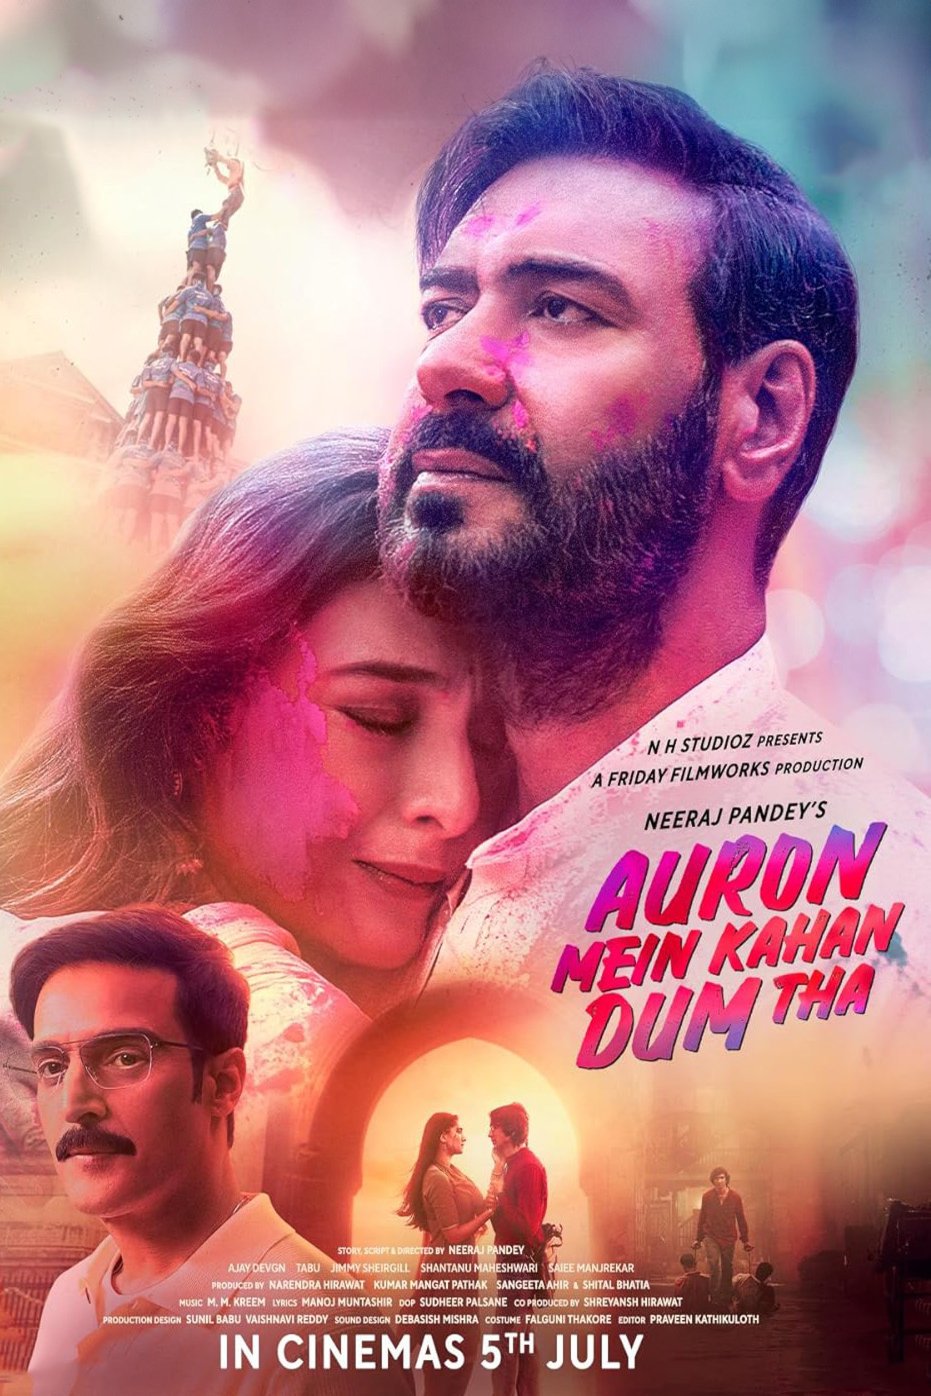 Hindi poster of the movie Auron Mein Kahan Dum Tha